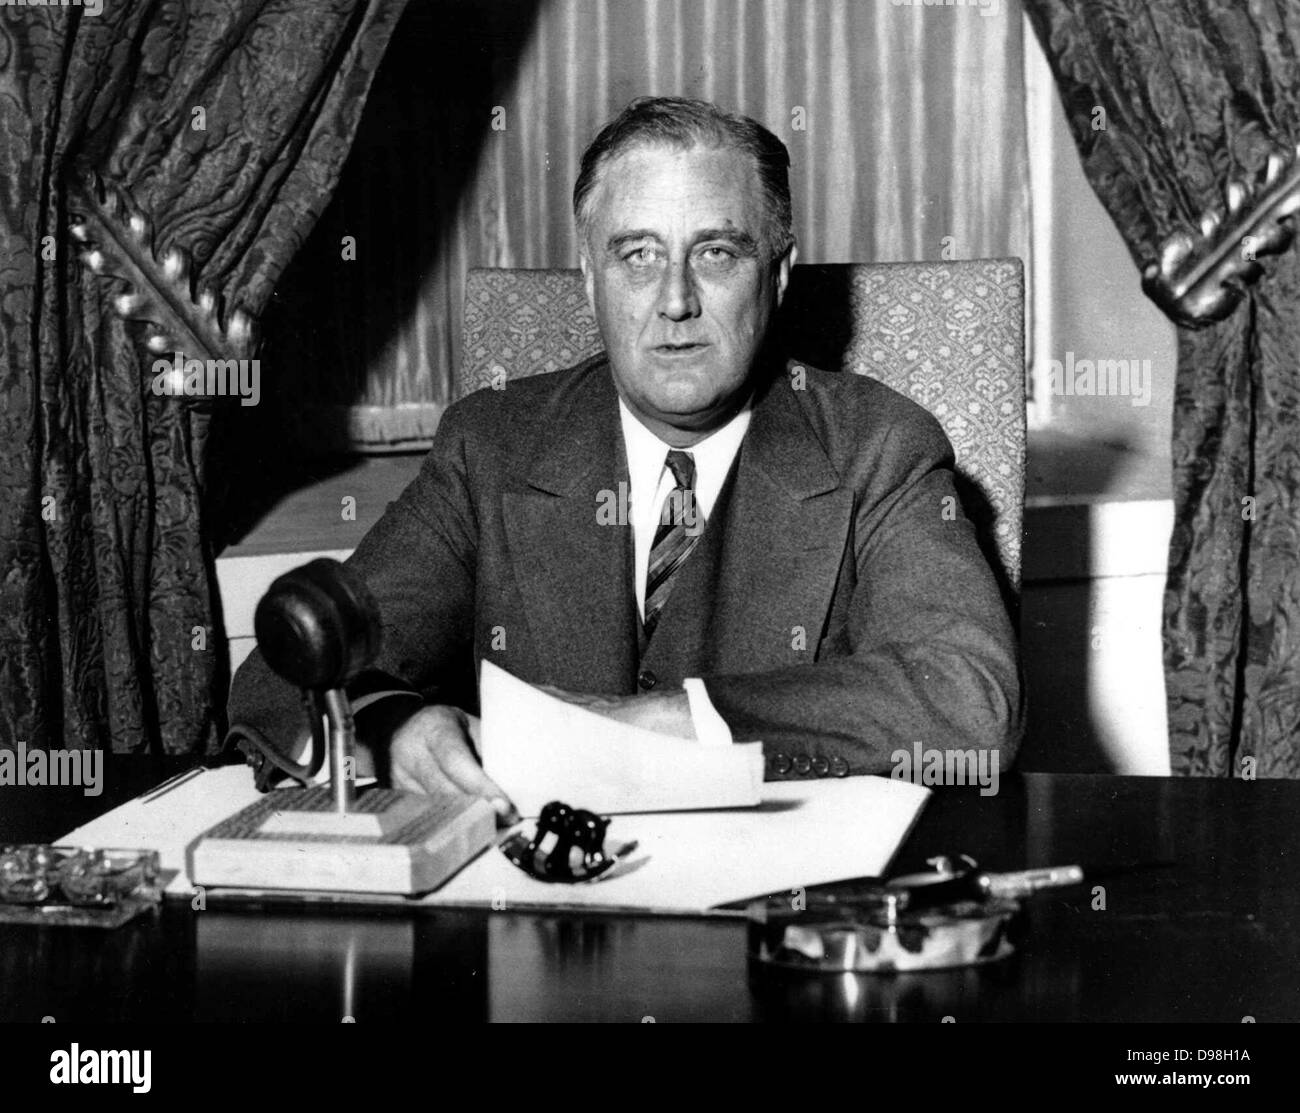 Franklin Delano Roosevelt auch durch seine Initialen, FDR bekannt, war der 32. Präsident der Vereinigten Staaten (1933-1945) Die Kamingespräche eine Reihe von dreißig Abend radio Adressen, die von den Präsidenten der Vereinigten Staaten Franklin D. Roosevelt zwischen 1933 und 1944 gegeben wurden Stockfoto